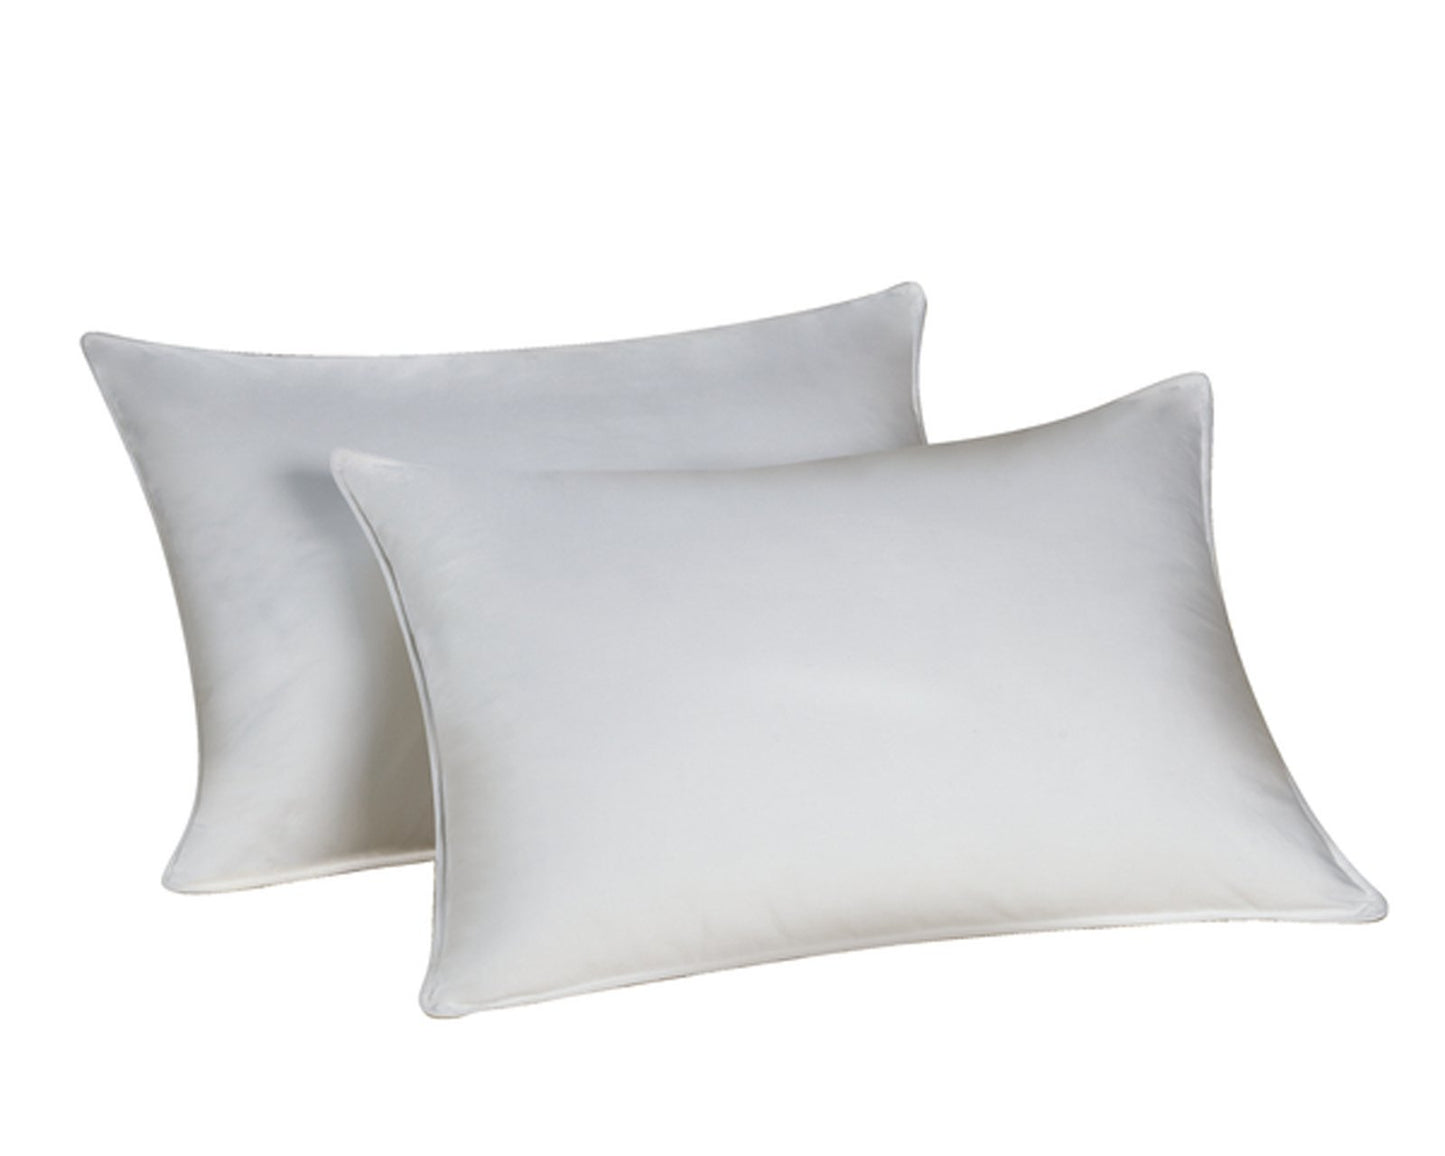 Envirosleep Dream Surrender Firm King Pillow Set. (2 Pillows)